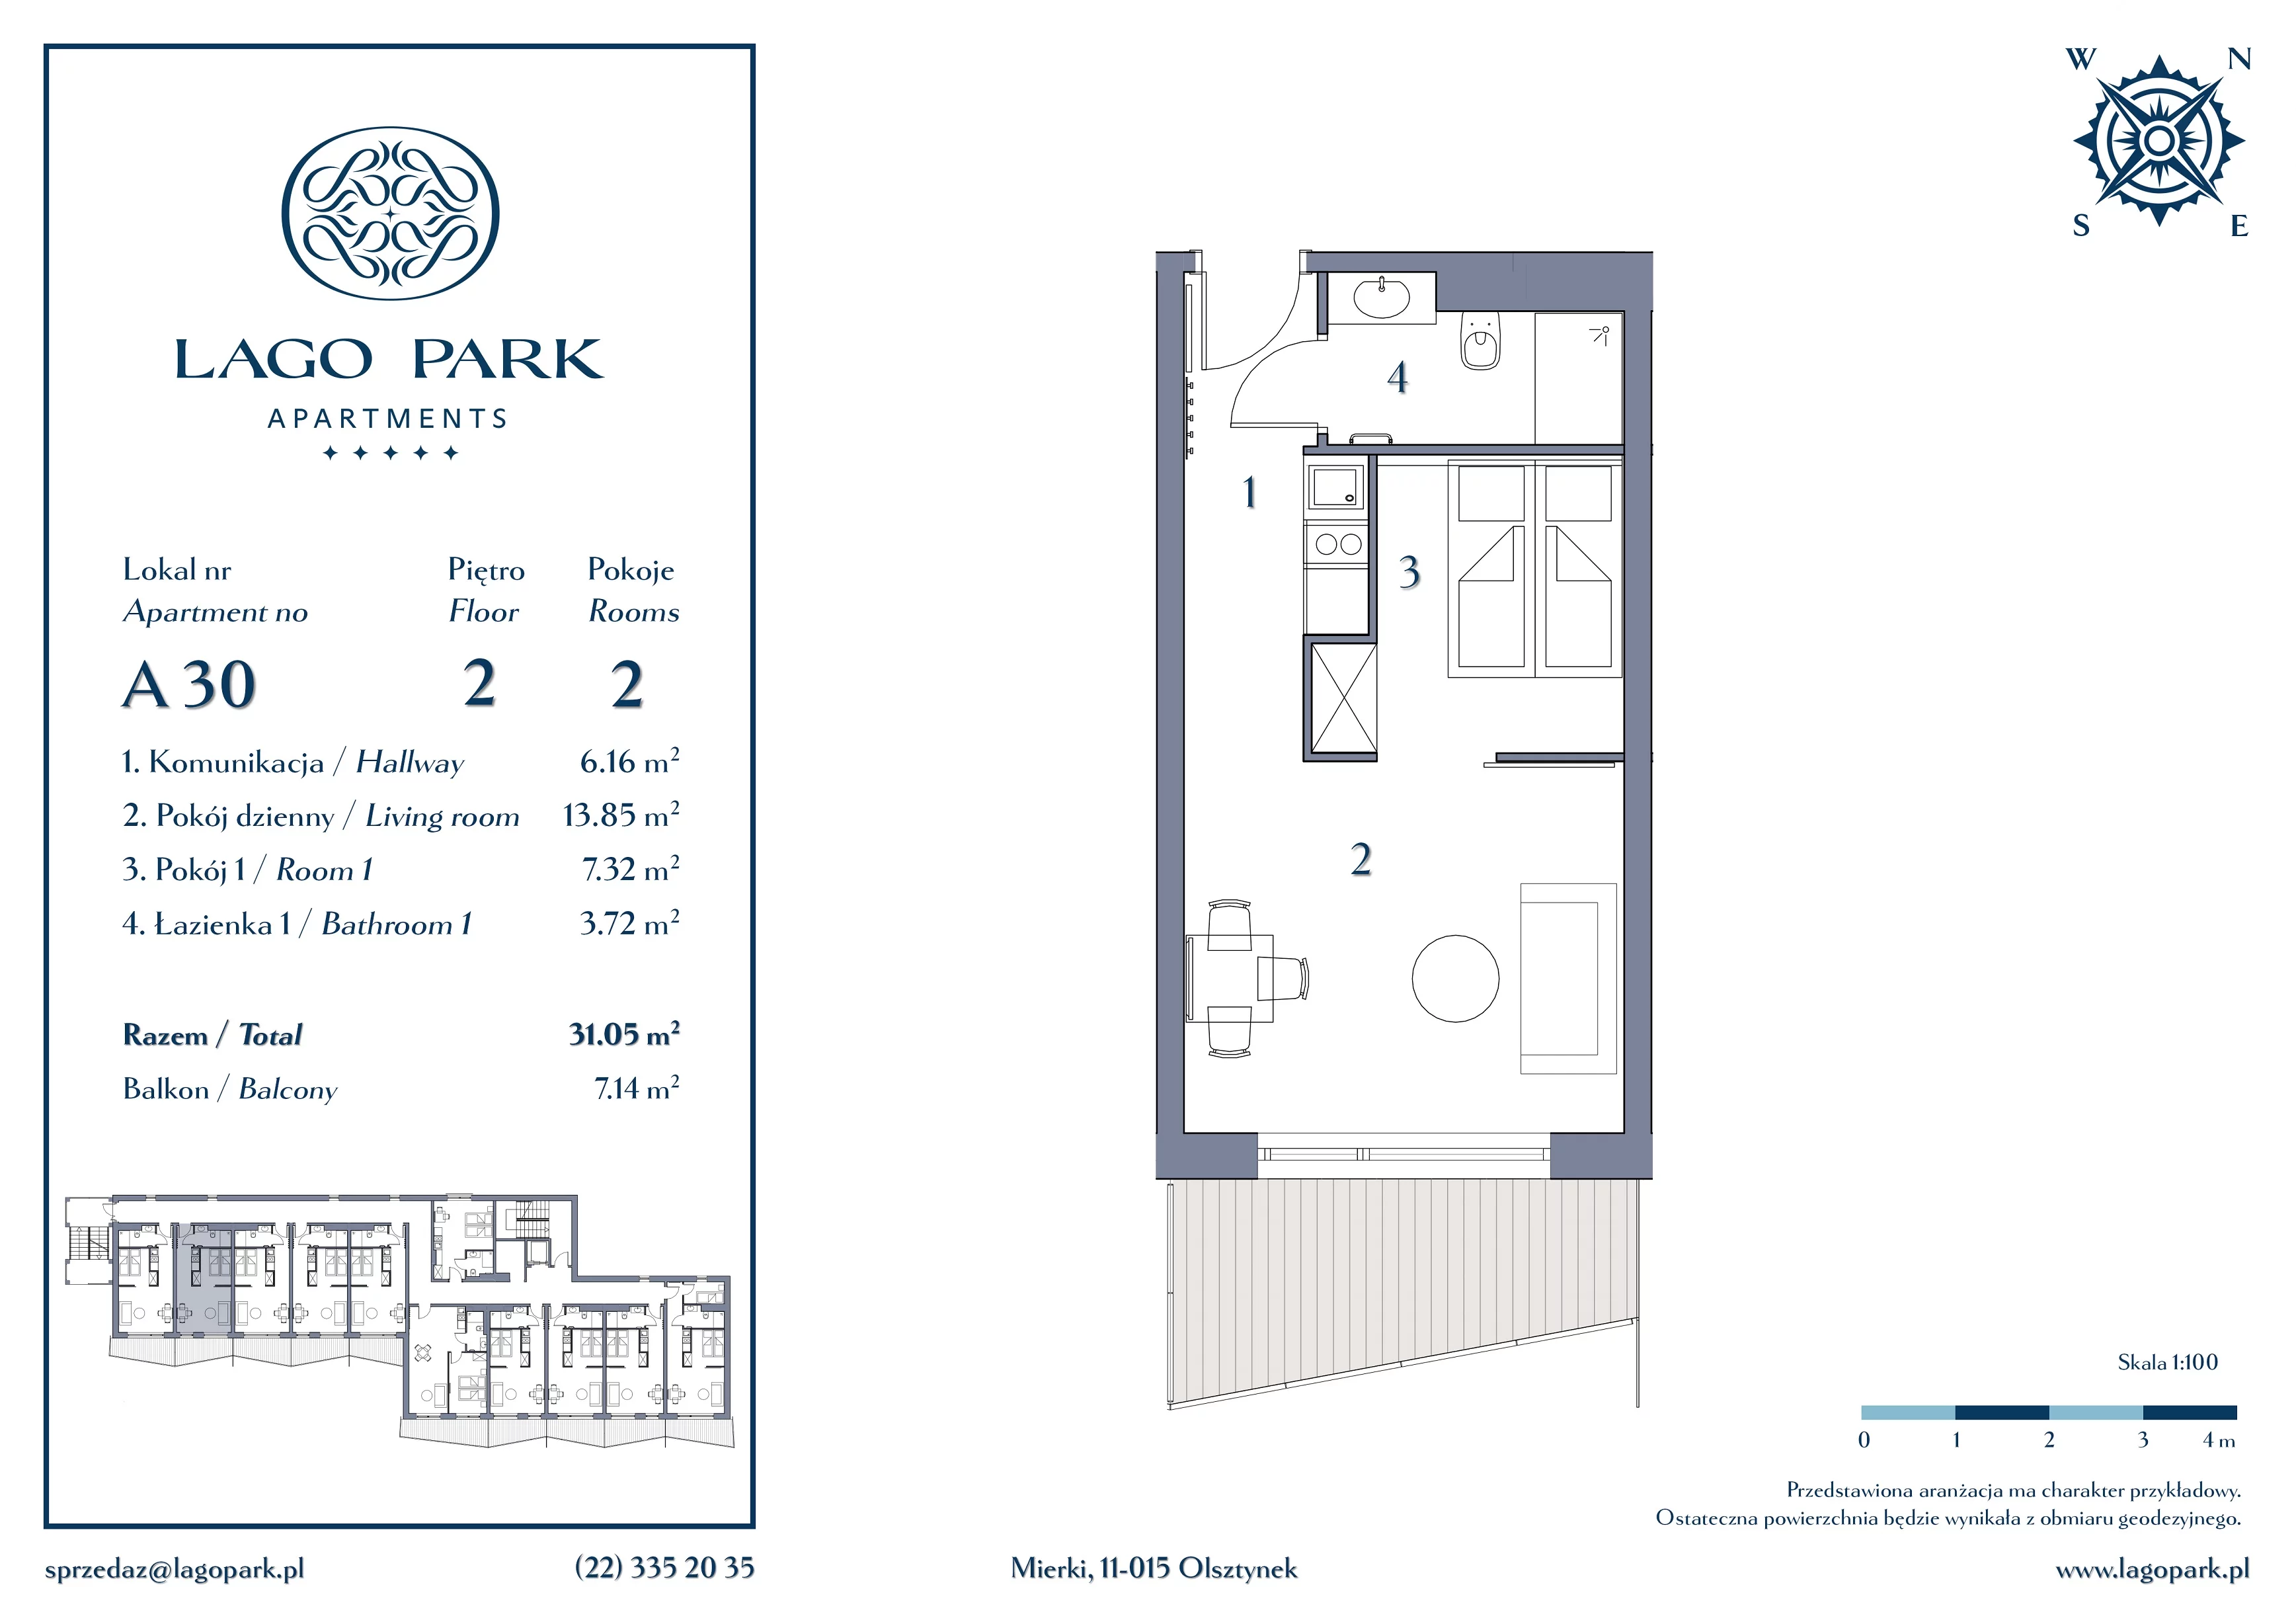 Apartament inwestycyjny 31,05 m², piętro 2, oferta nr A30, Lago Park Apartments by Aries, Mierki, Kołatek 2